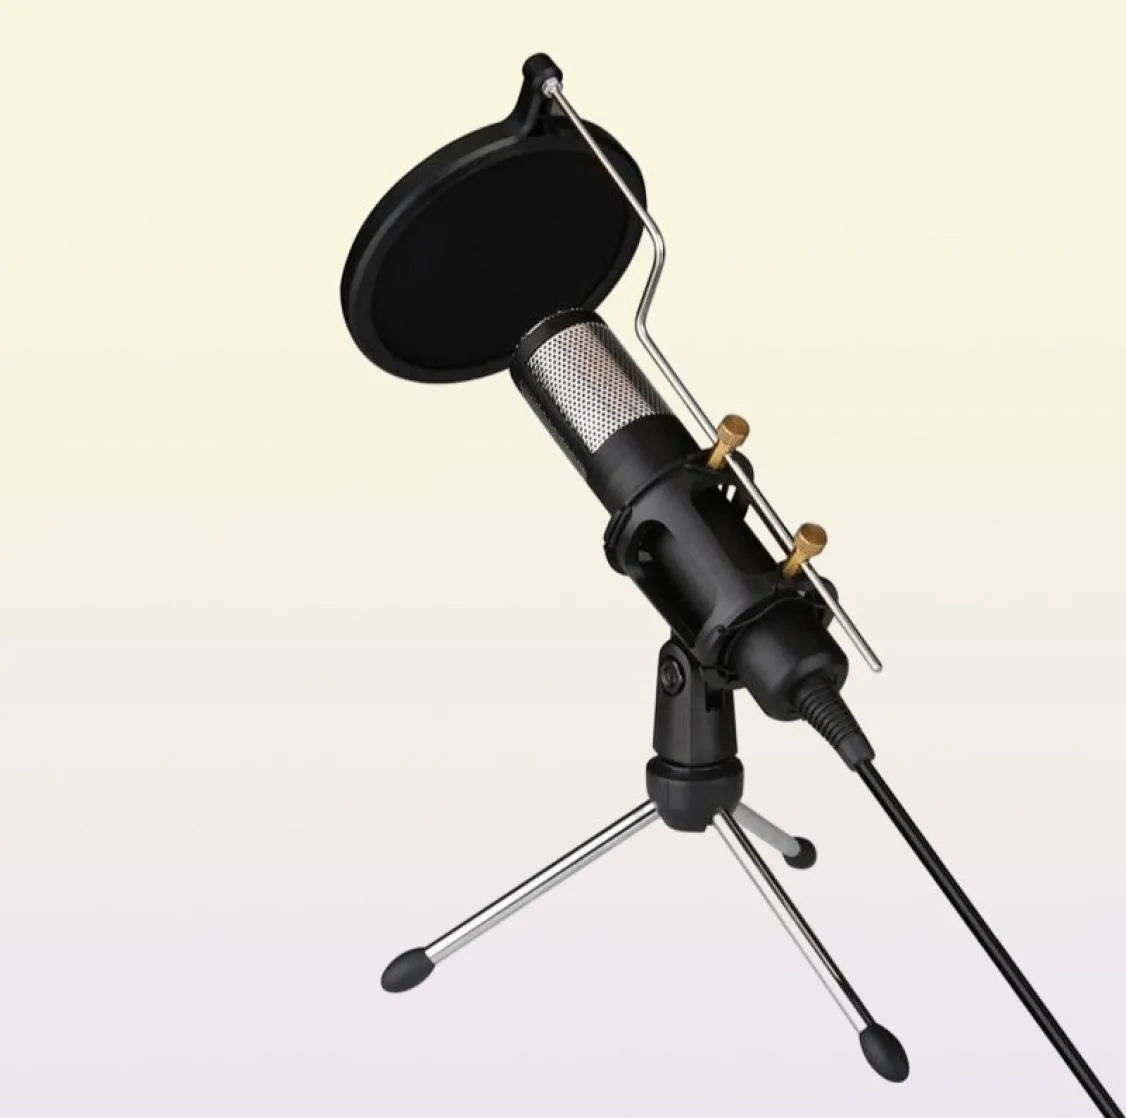 Professionele condensor Microfoon Studio Recording USB Microfoon Karaoke Mic met standaard voor computer Laptop PC3272012